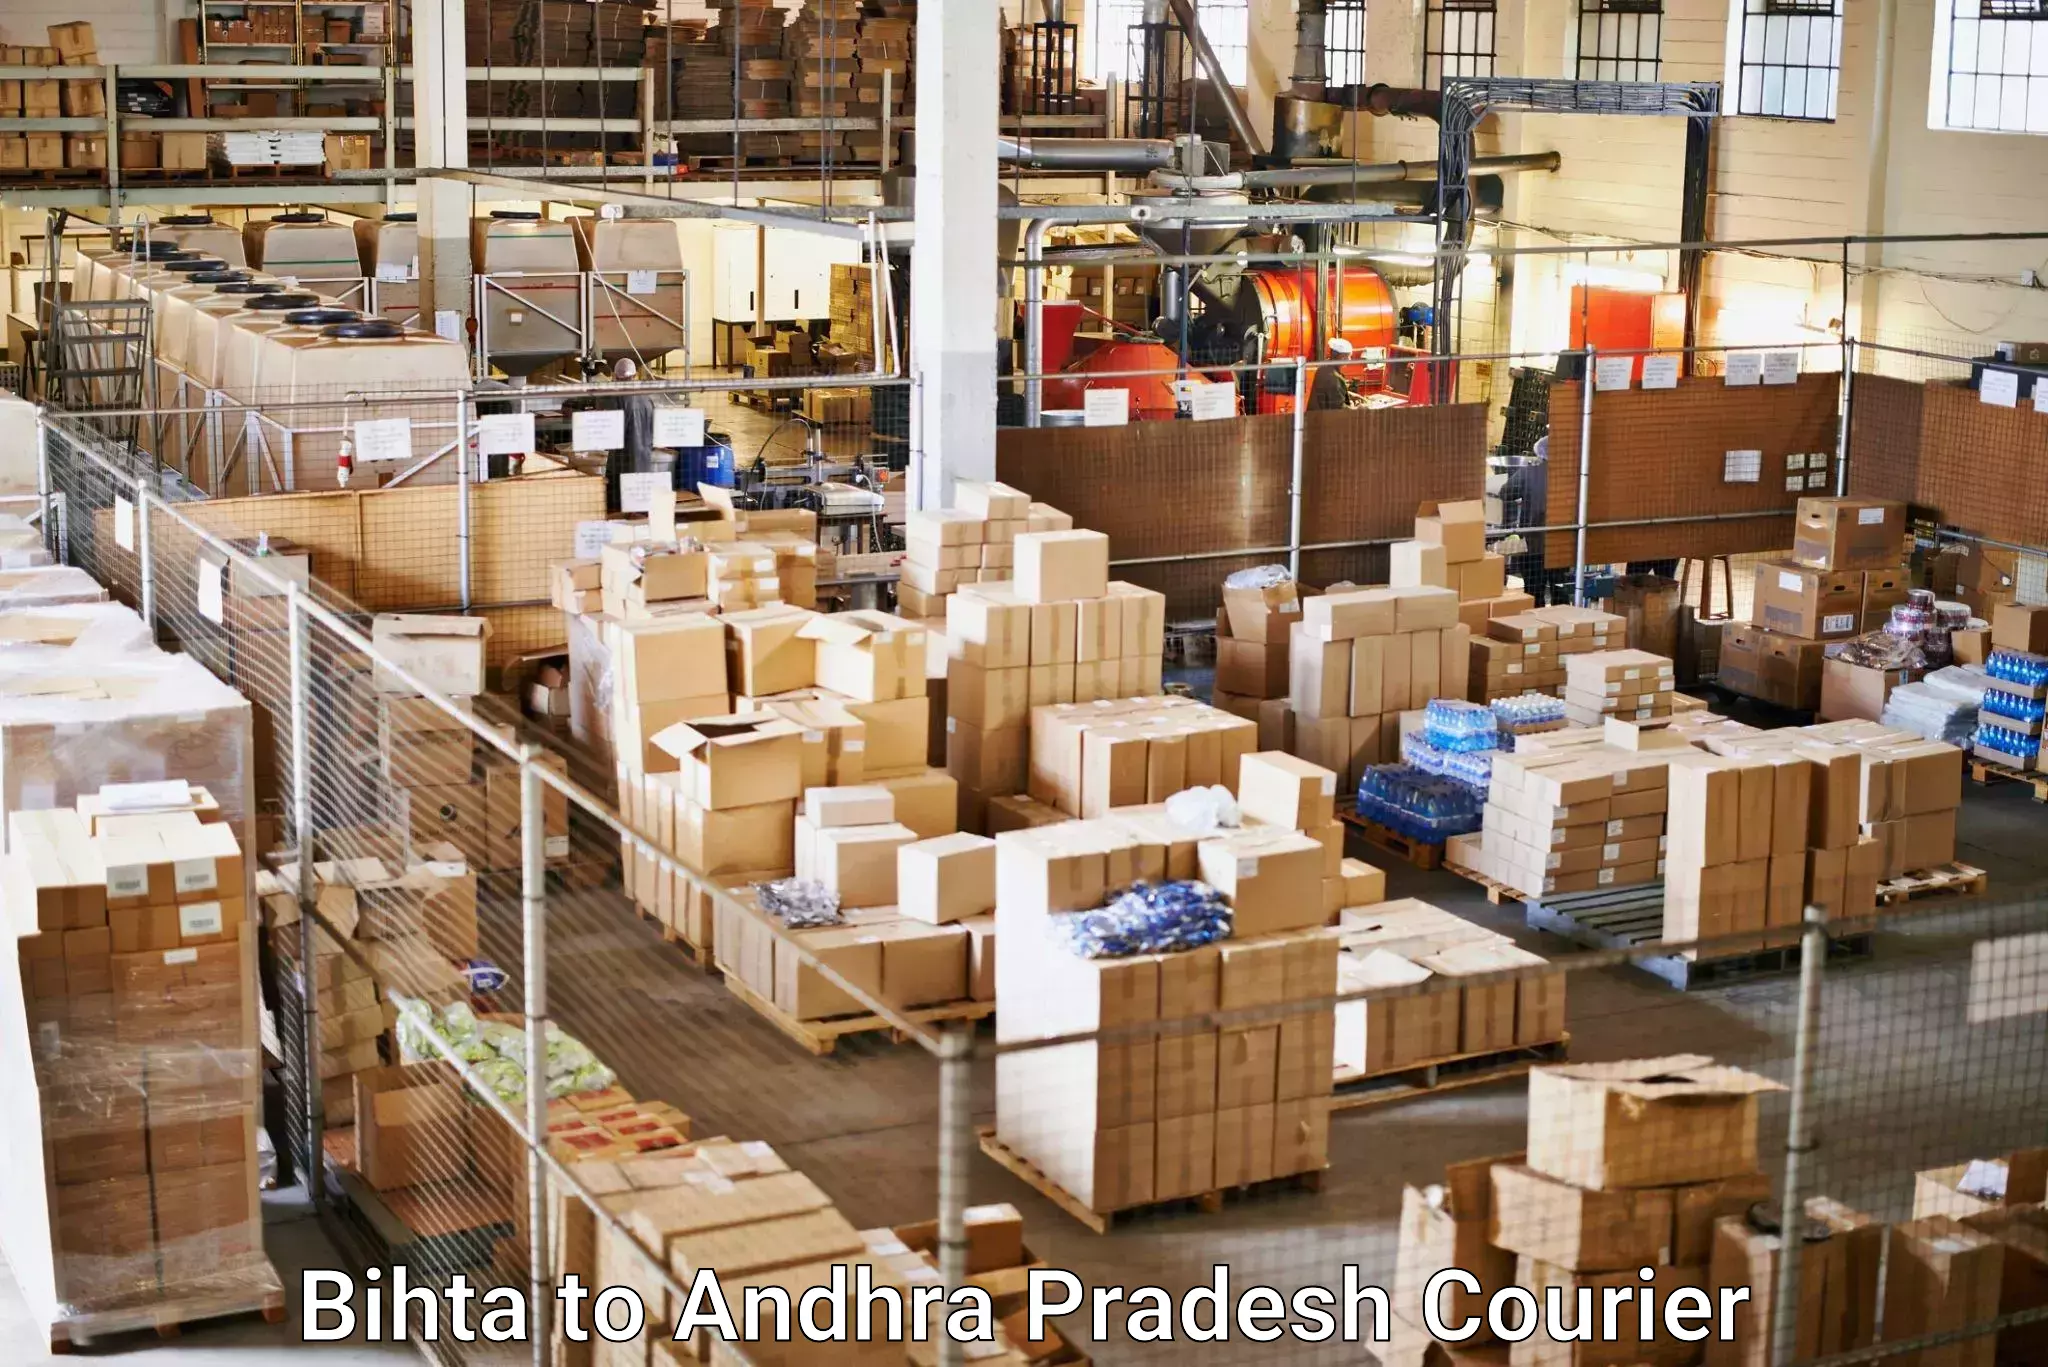 Tracking updates in Bihta to Andhra Pradesh